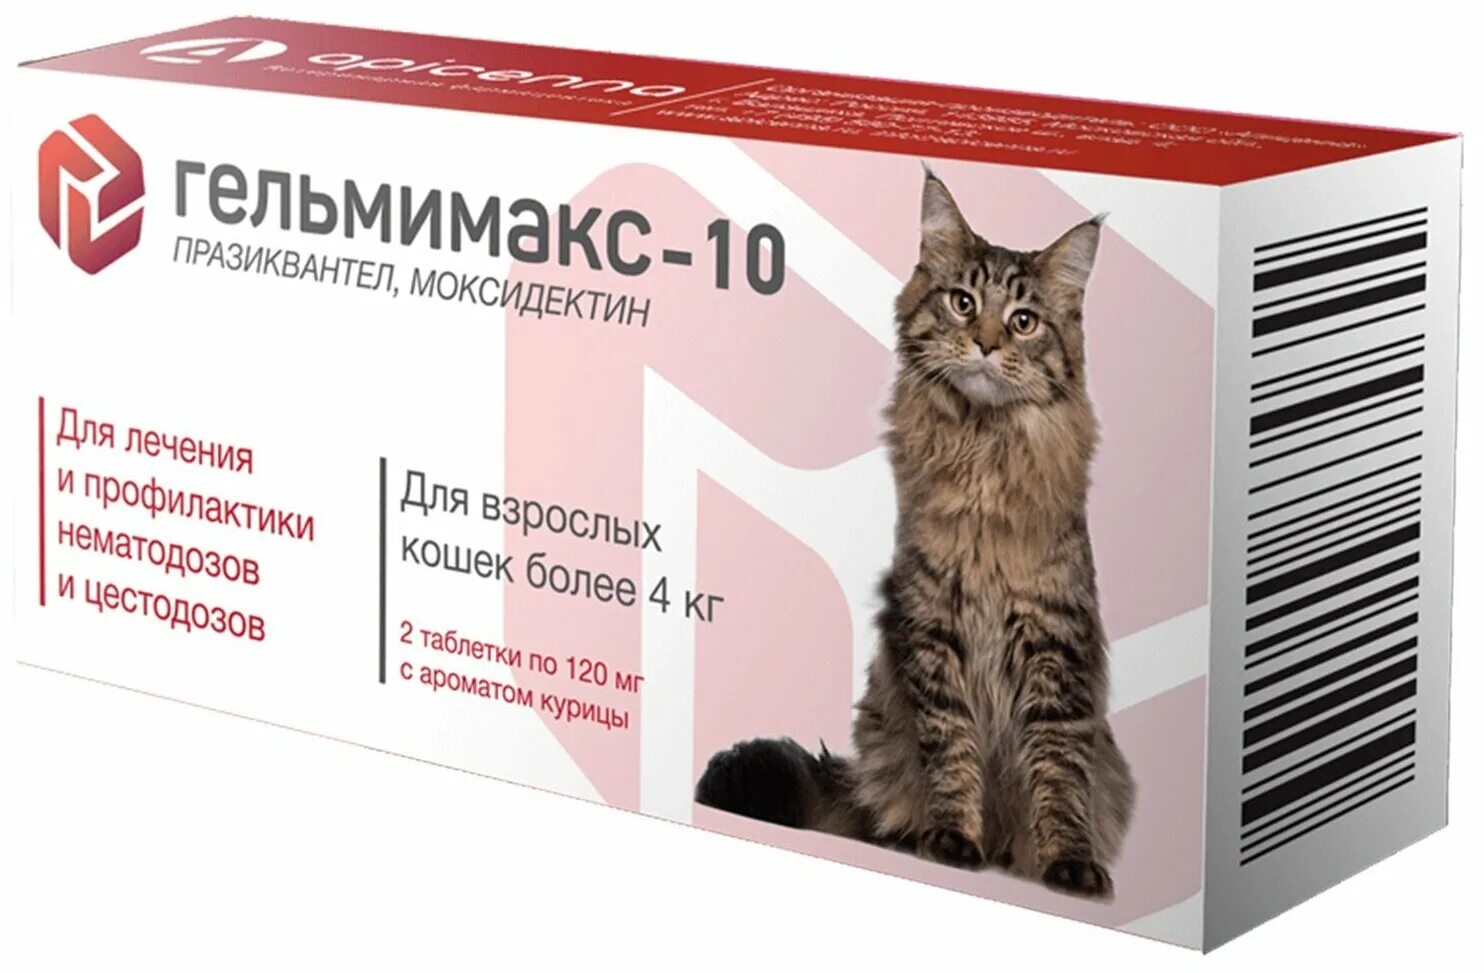 Гельмимакс-4 д/взрослых кошек и котят 2*120 мг. Гельмимакс для кошек таблетка. Гельмимакс- 4 для кошек и котят 2 табл*120 мг 1/10/60. Гельмимакс 10 таблетки для кошек. Средства от глистов купить